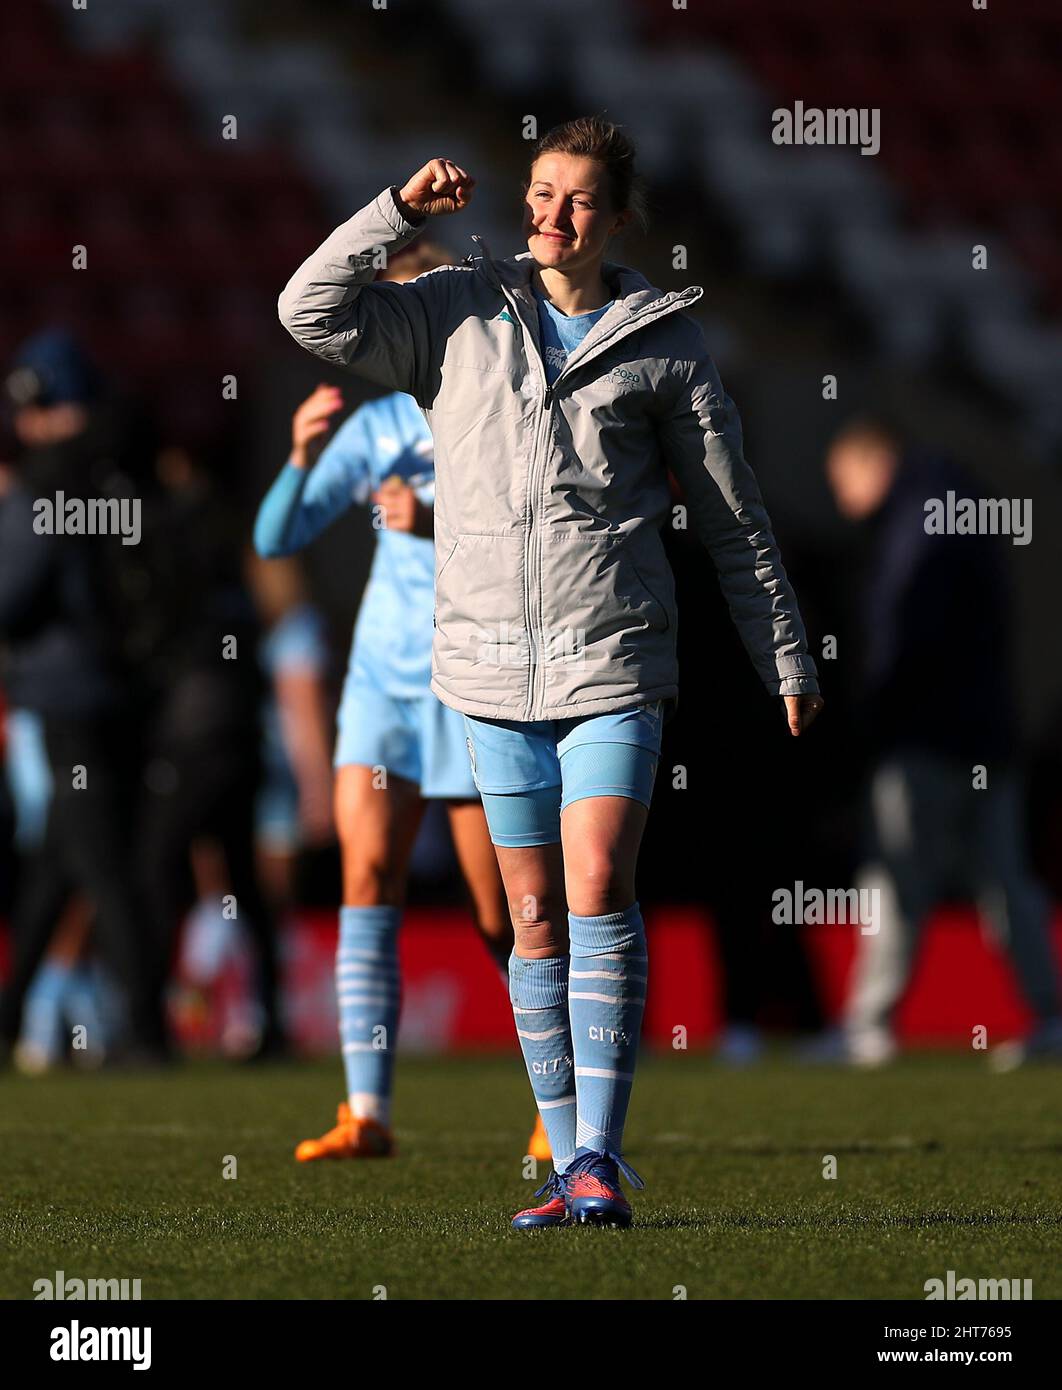 Ellen White, de Manchester City, célèbre après le cinquième match de la Vitality Women's FA Cup au Leigh Sports Village, Manchester. Date de la photo: Dimanche 27 février 2022. Banque D'Images